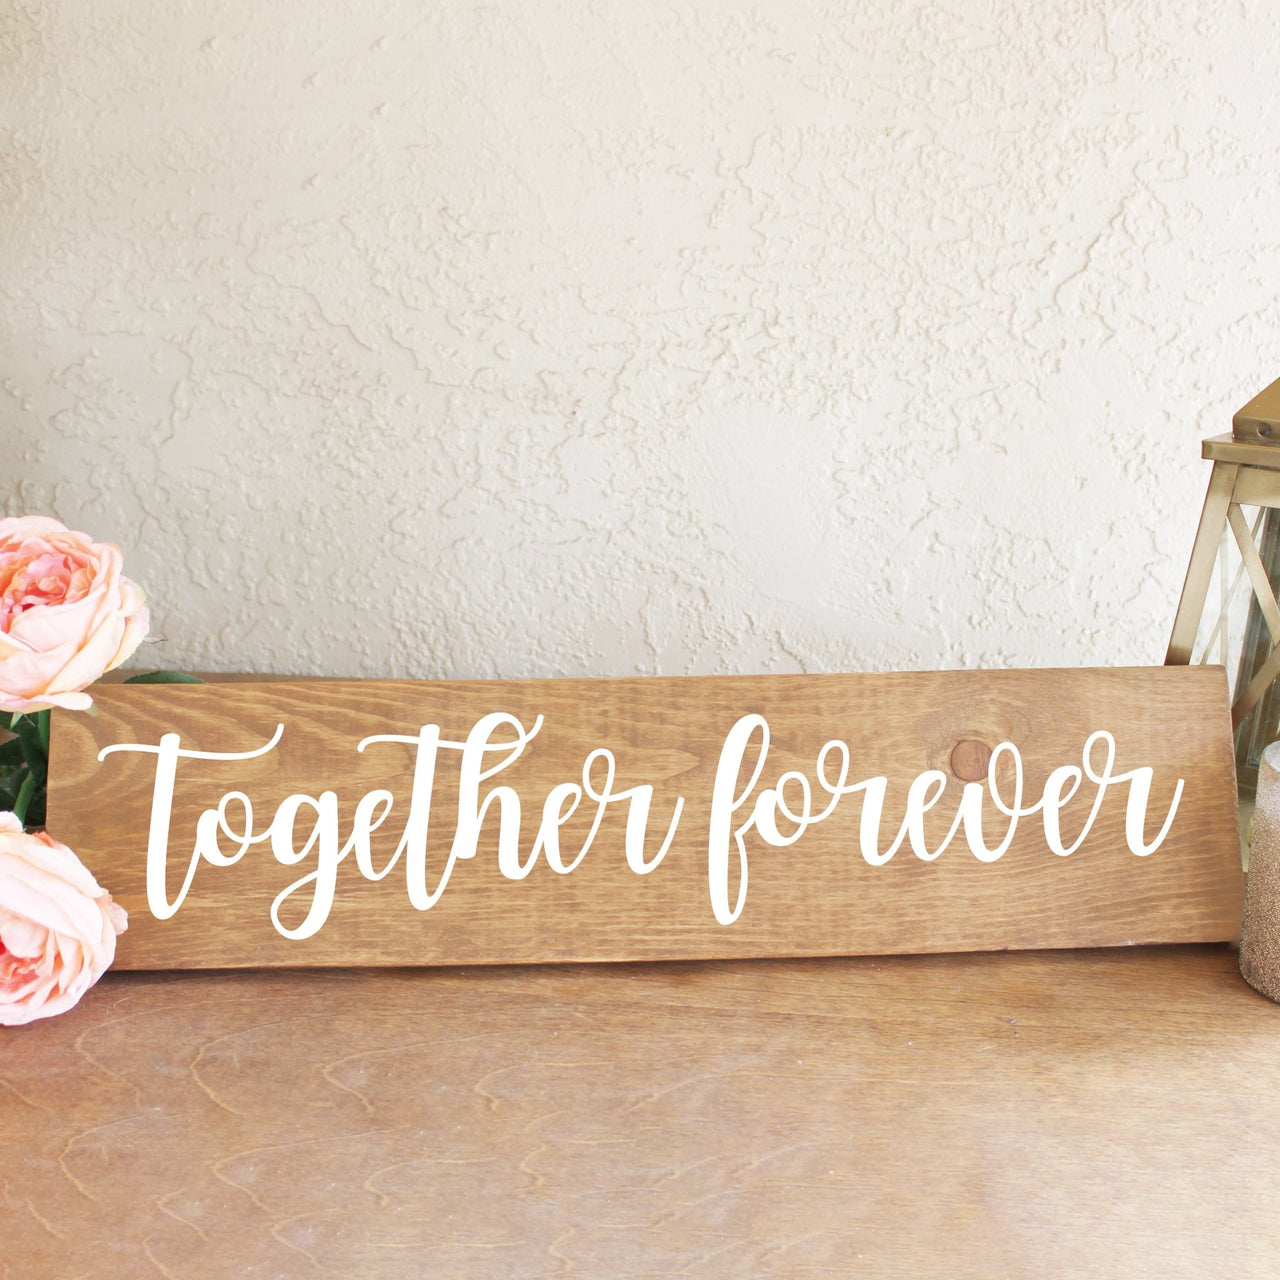 Together Forever Wooden Sign - Rich Design Co